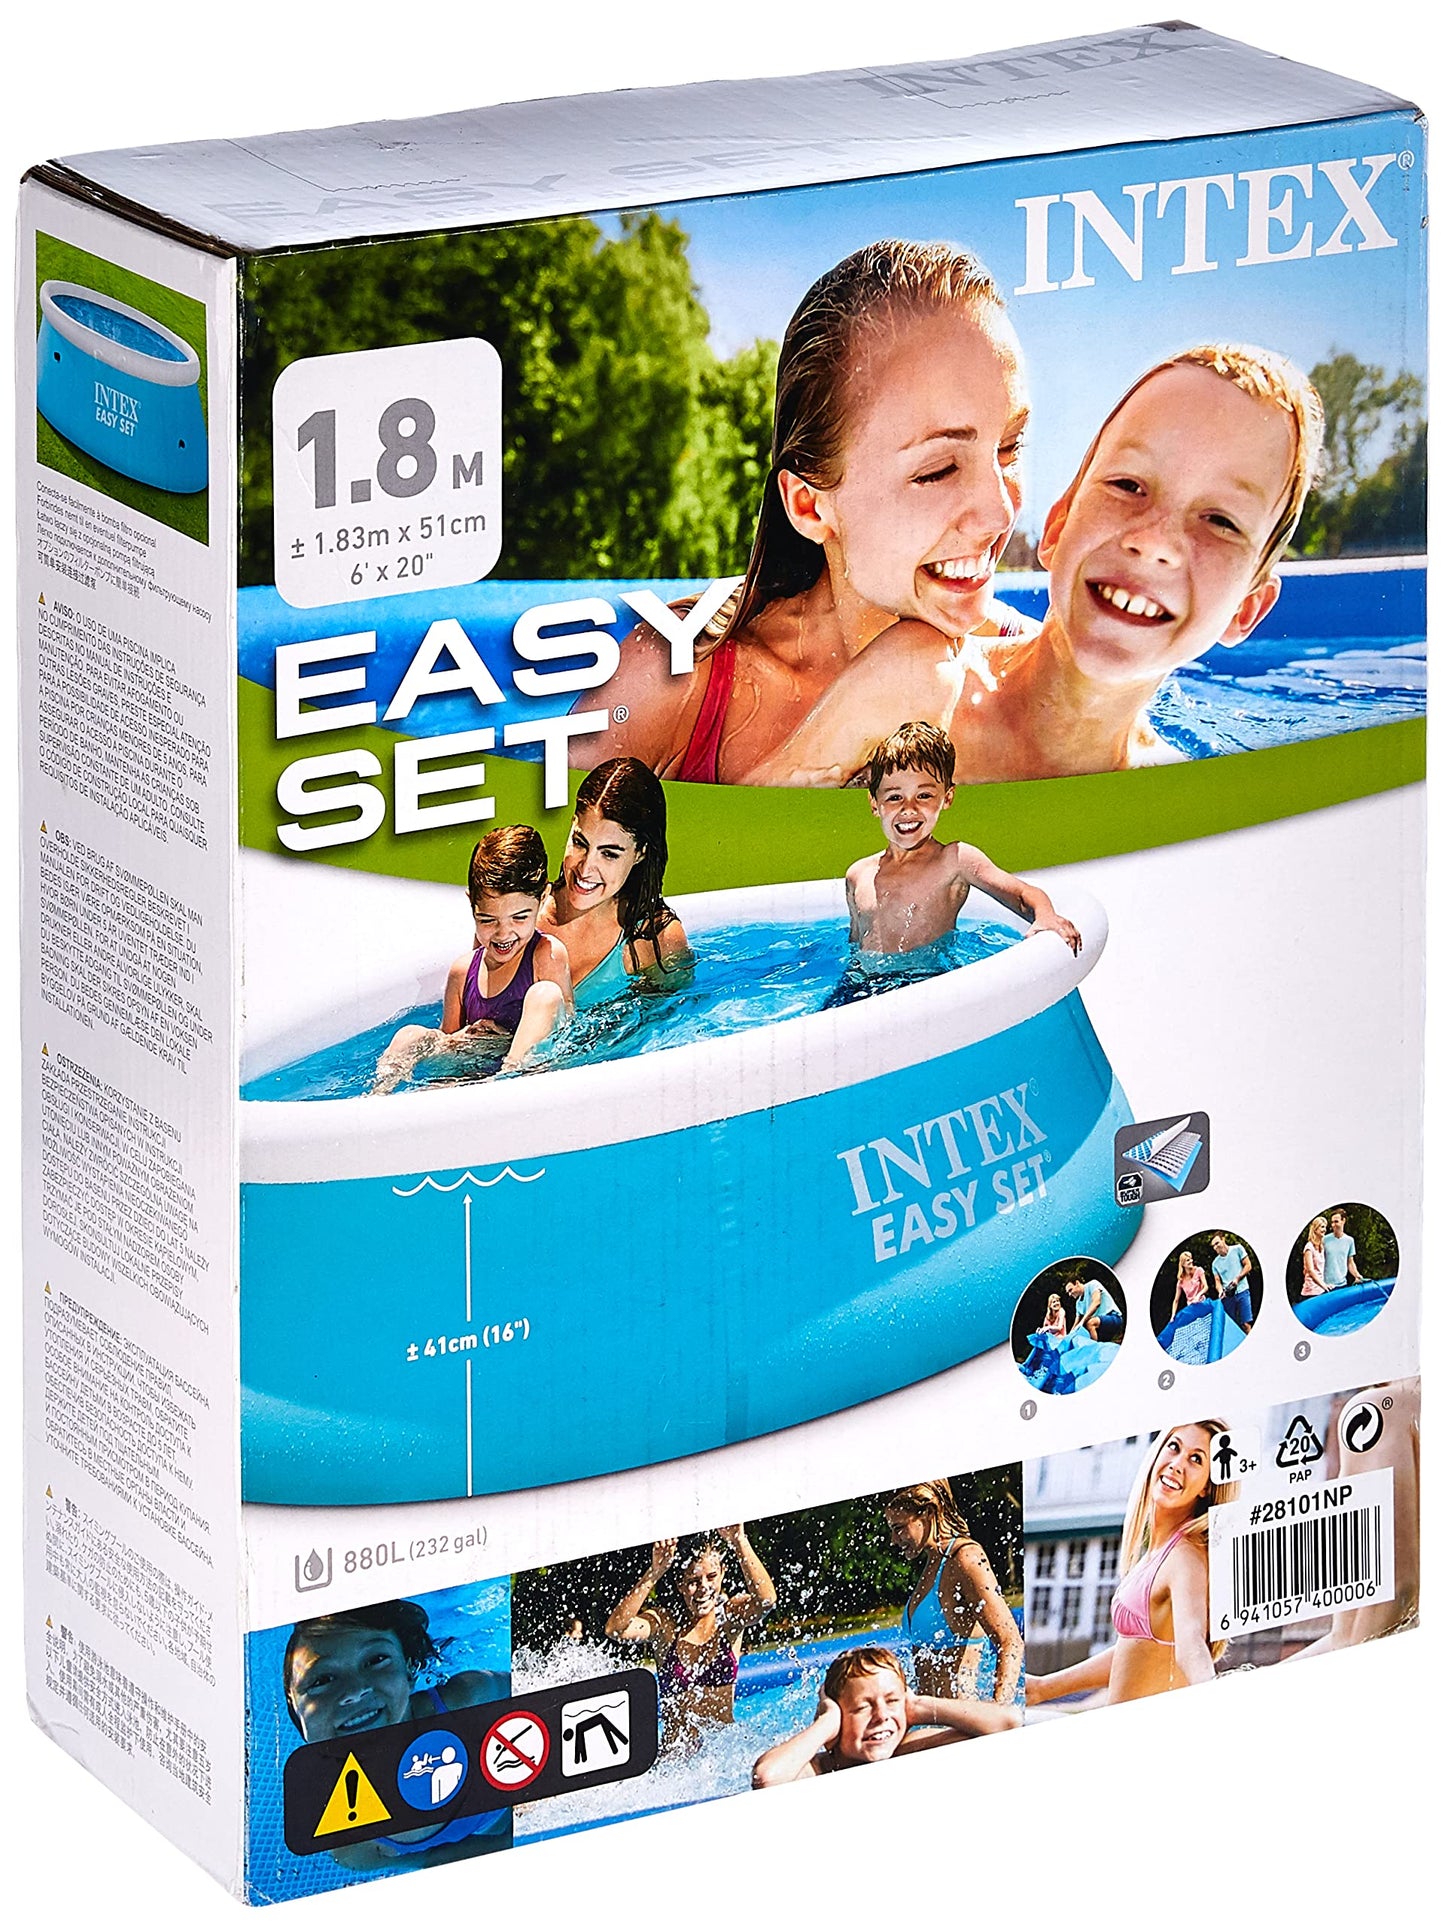 Intex Easy Set Pool, 6' x 20", Blue